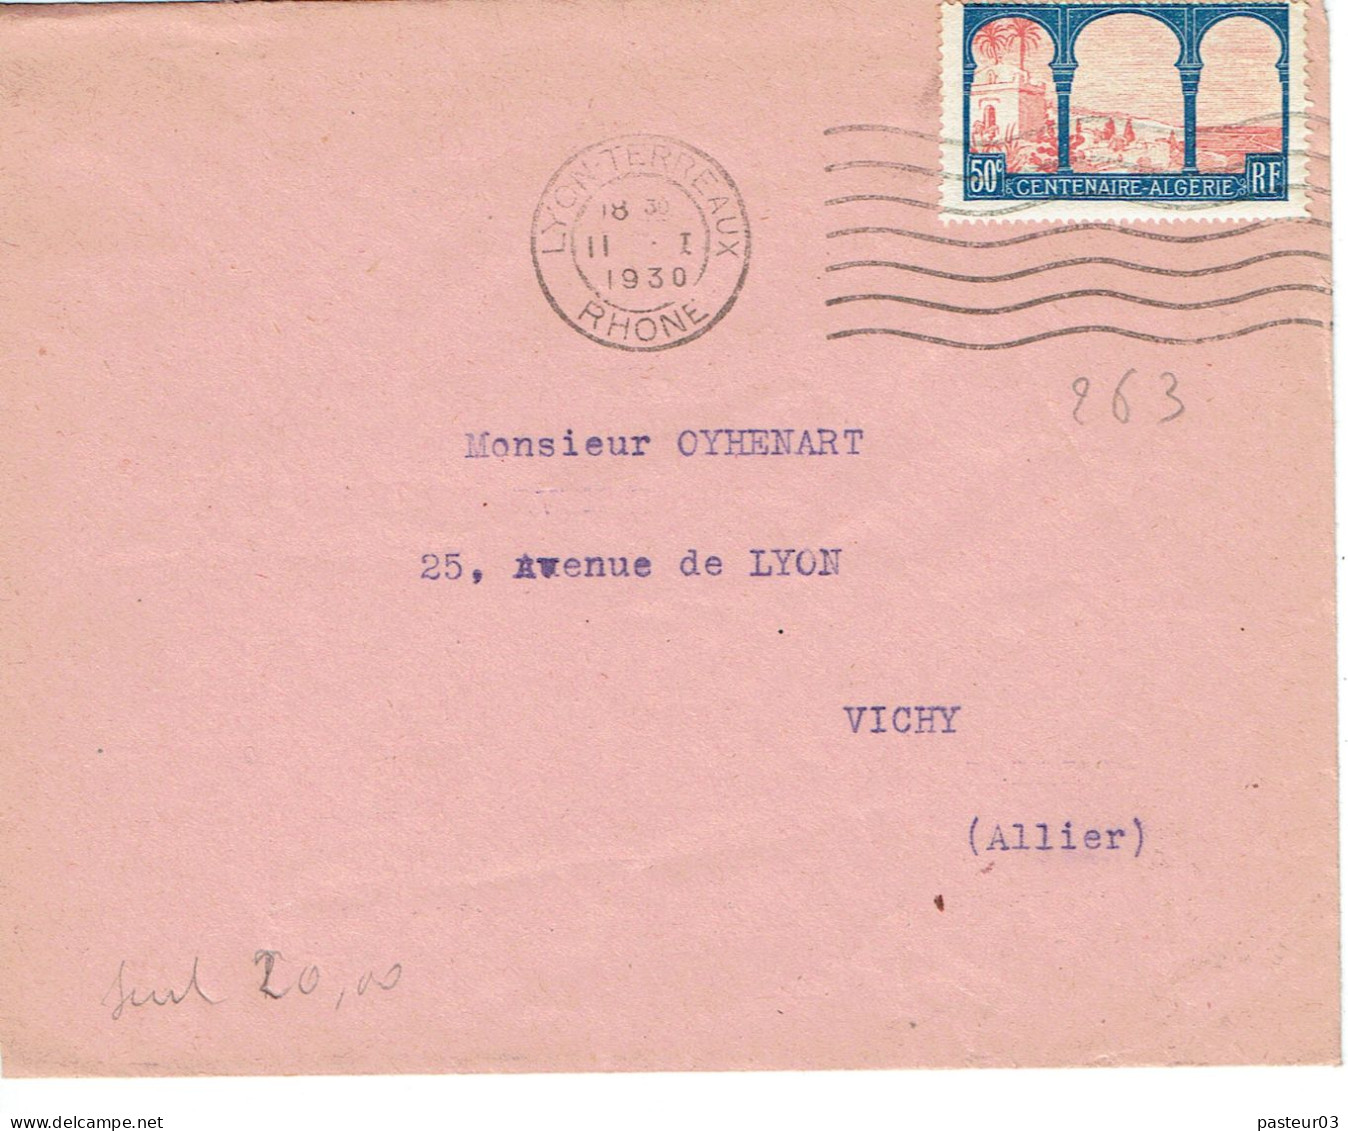 263 Centenaire De L'Algérie 50 C. Lettre Flamme Flier 13-1-1930 Lyon Terreaux - Francobolli  Di Franchigia Militare